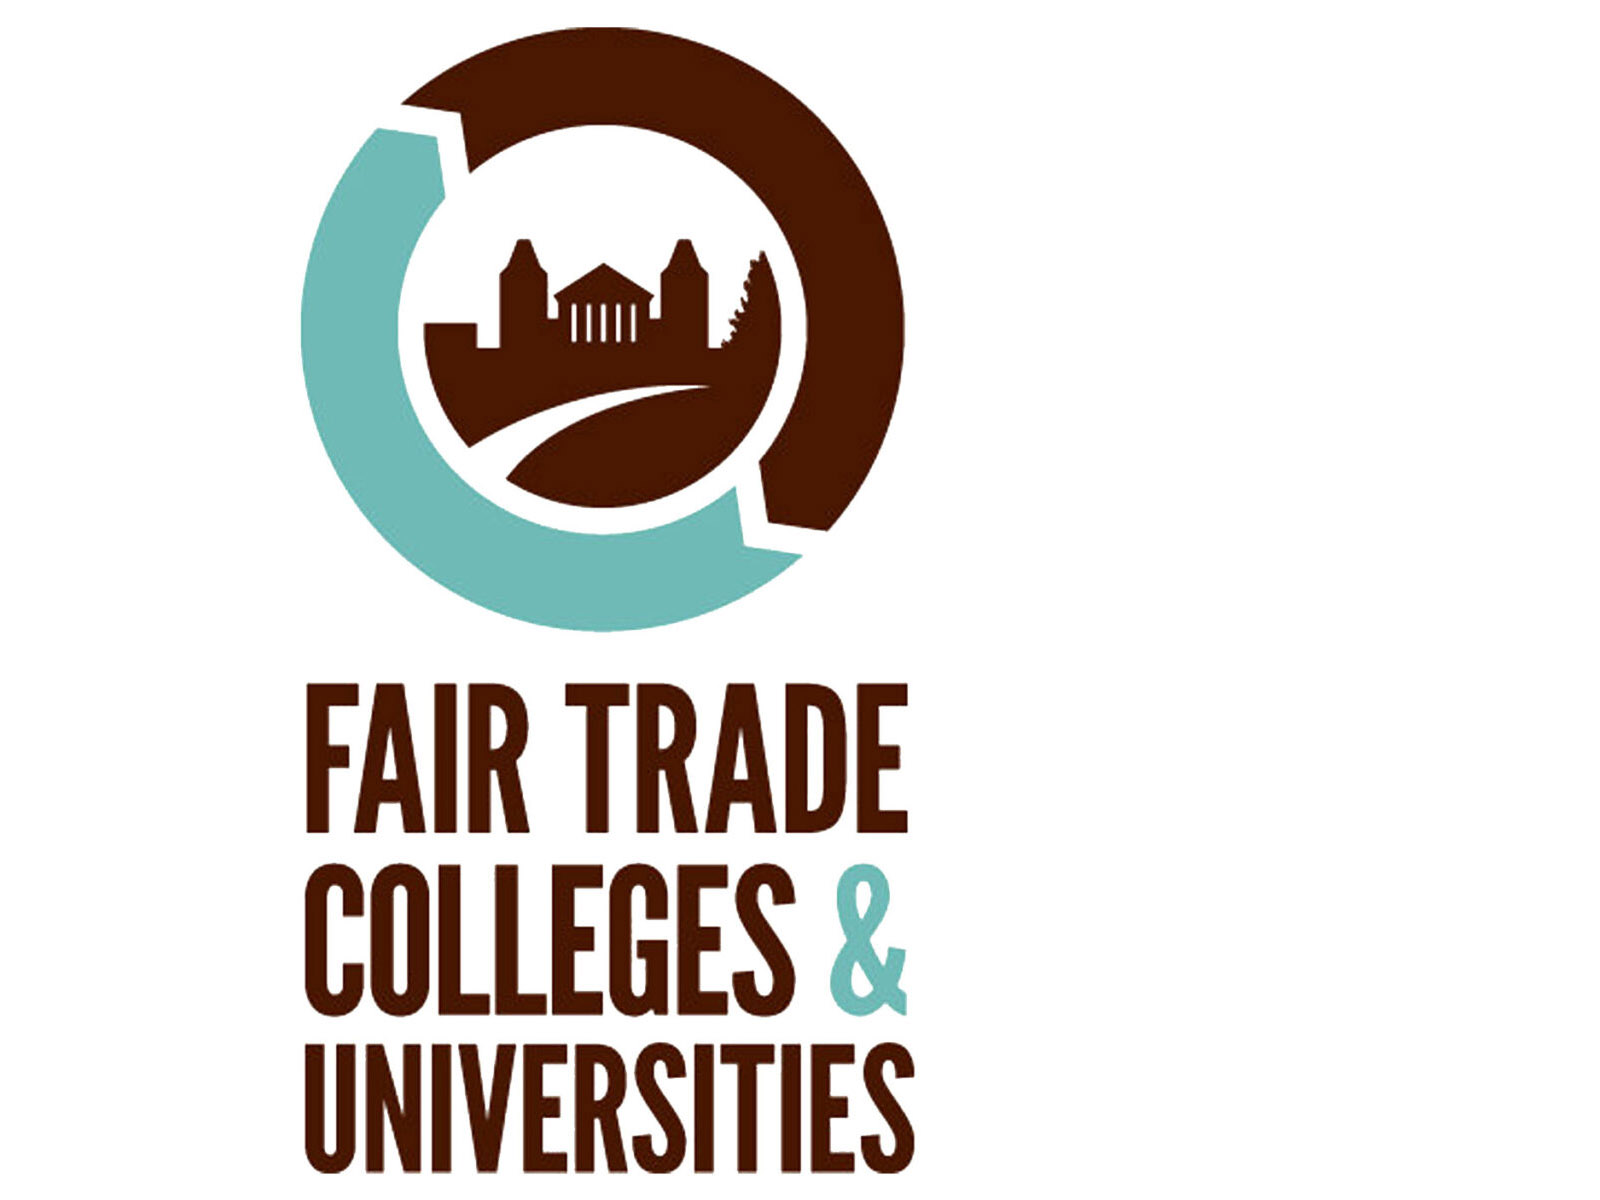 fair trade colleges & universities logo